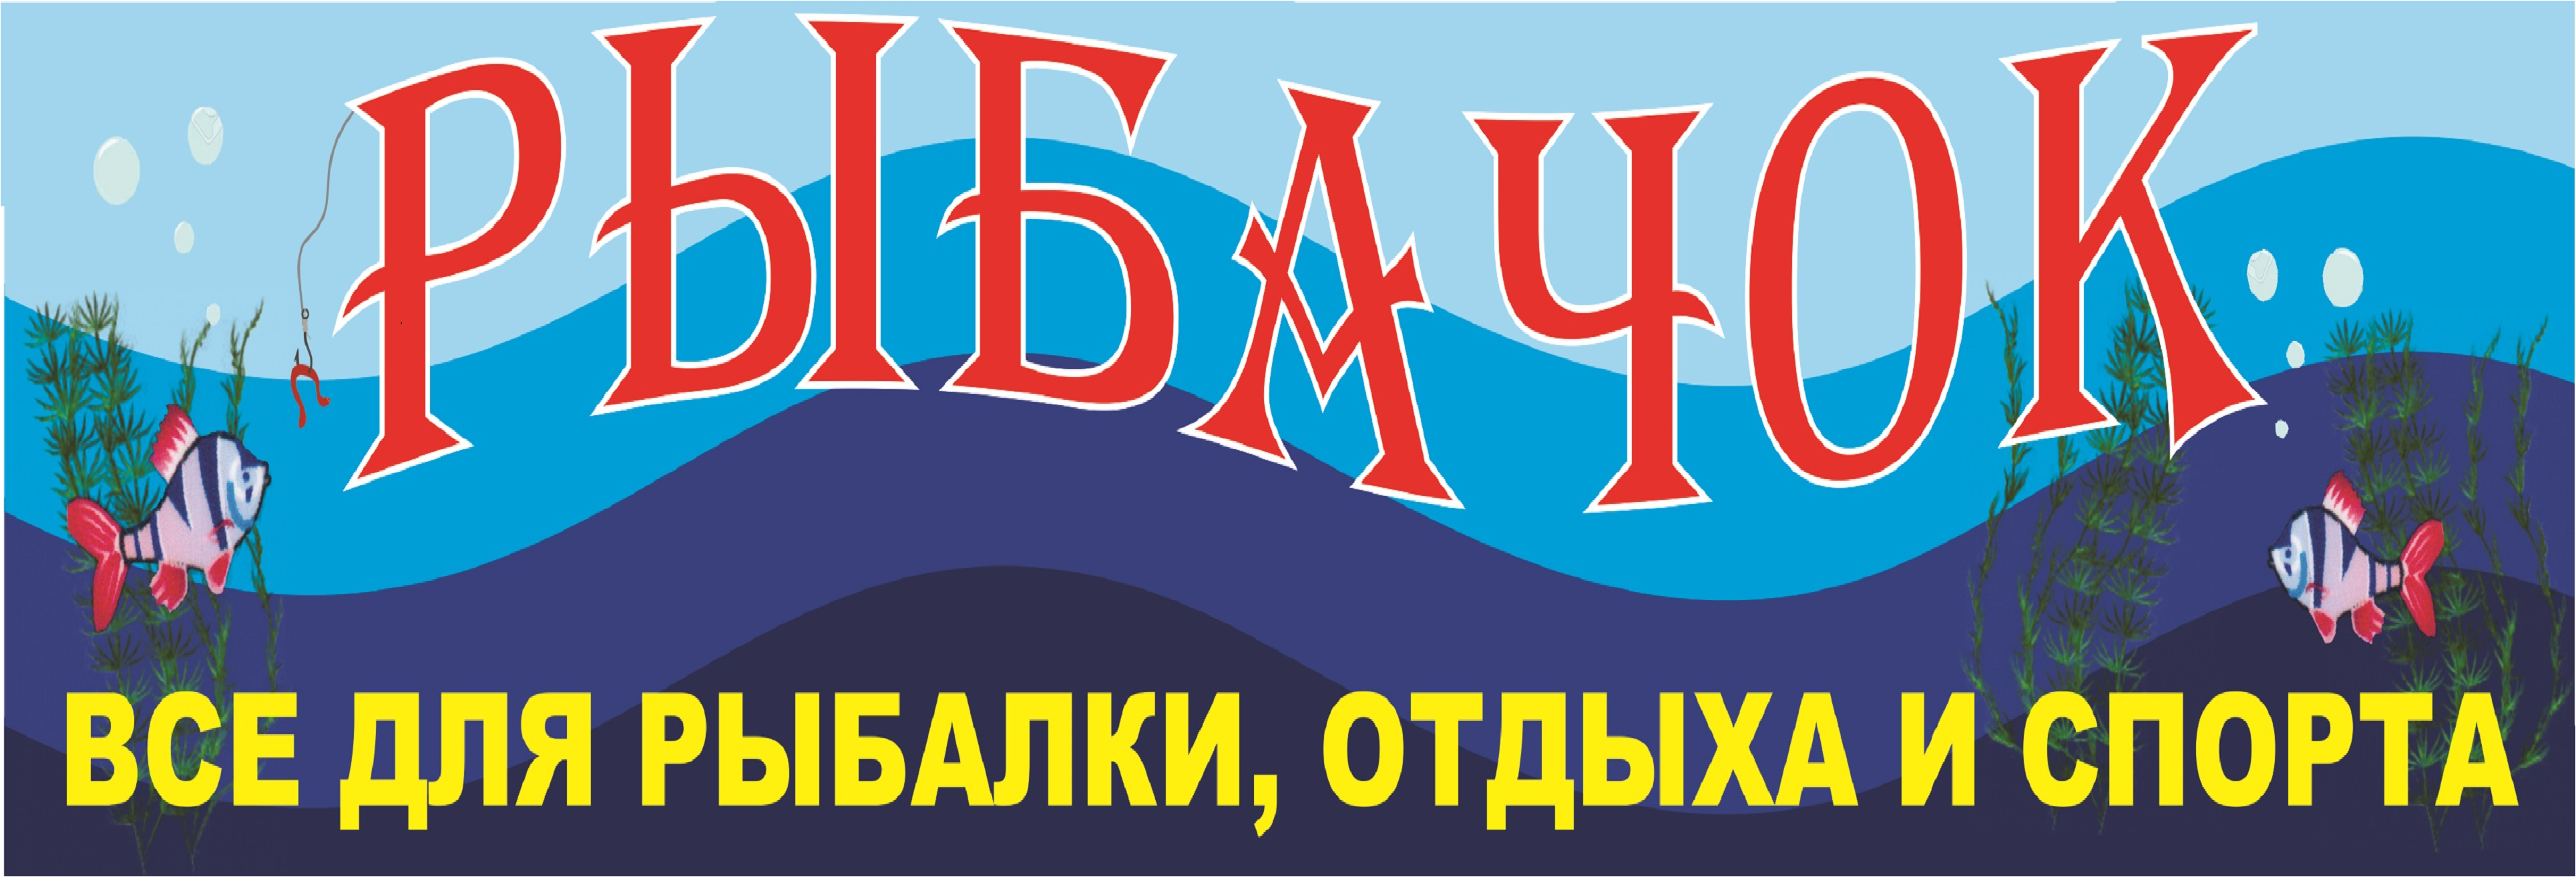 Рыбачок Ижевск Официальный Сайт Магазин